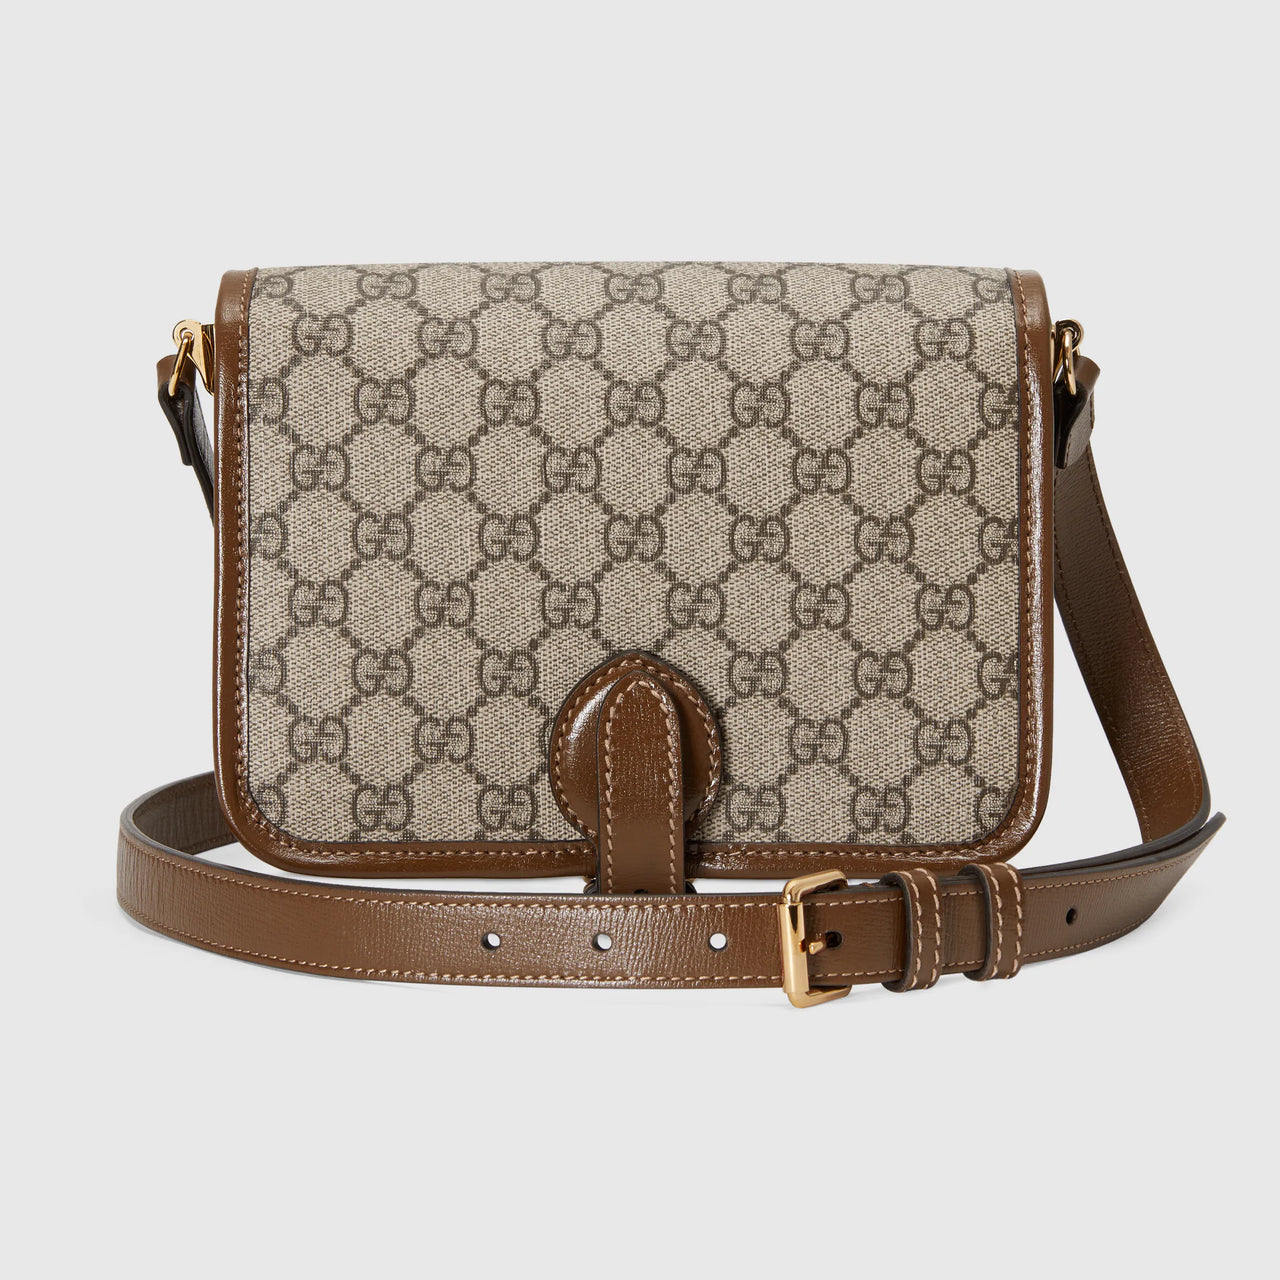 Gucci Mini Shoulder Bag with Interlocking G (Beige & Ebony)